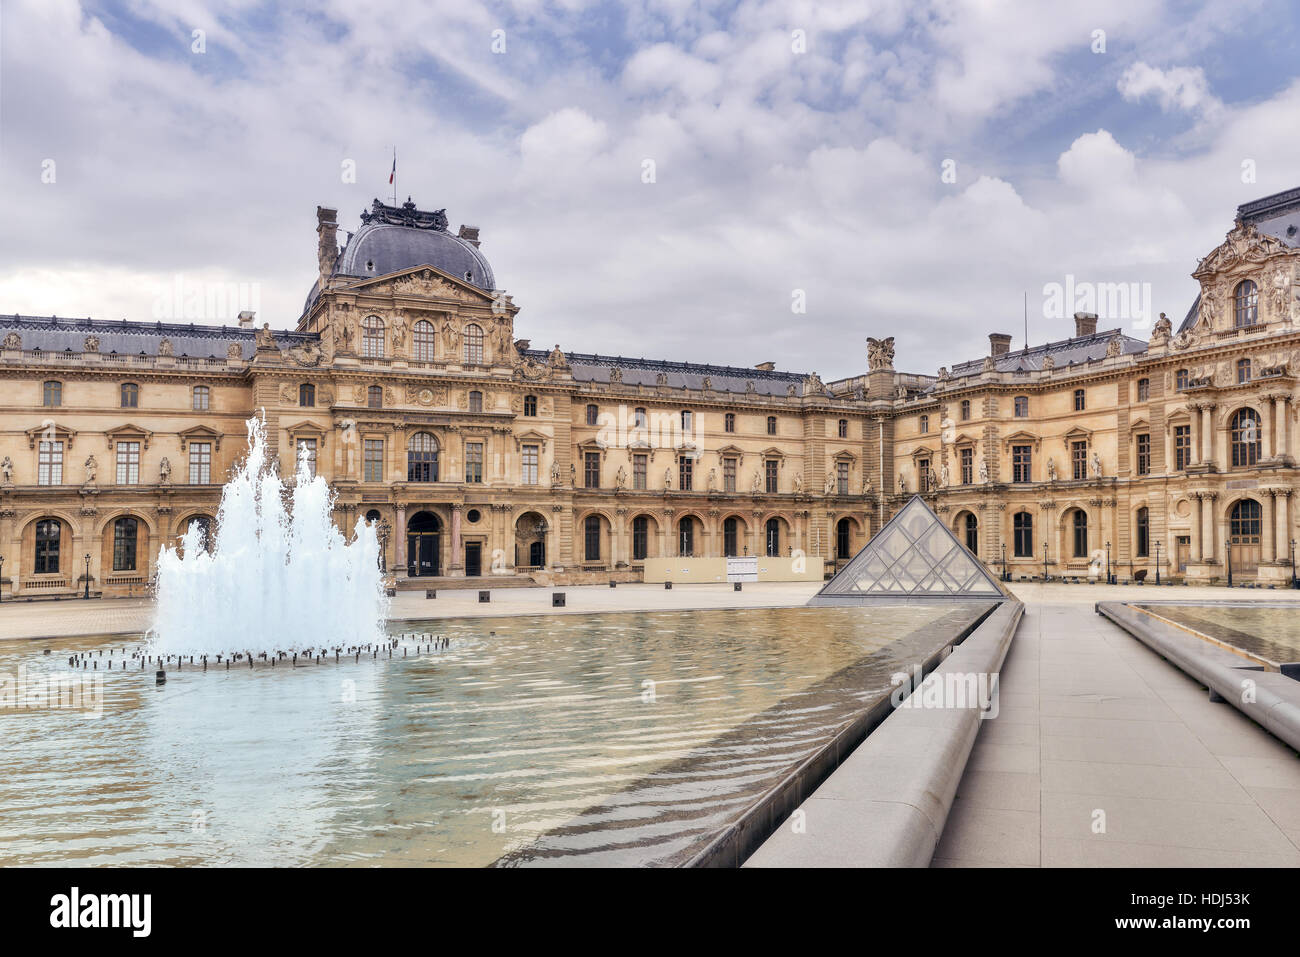 PARIS, FRANCE - Juillet 03, 2016:pyramide de verre et le musée du Louvre. Le Louvre est le plus grand musée dans Word avec près de 35 000 artefacts historiques. Banque D'Images